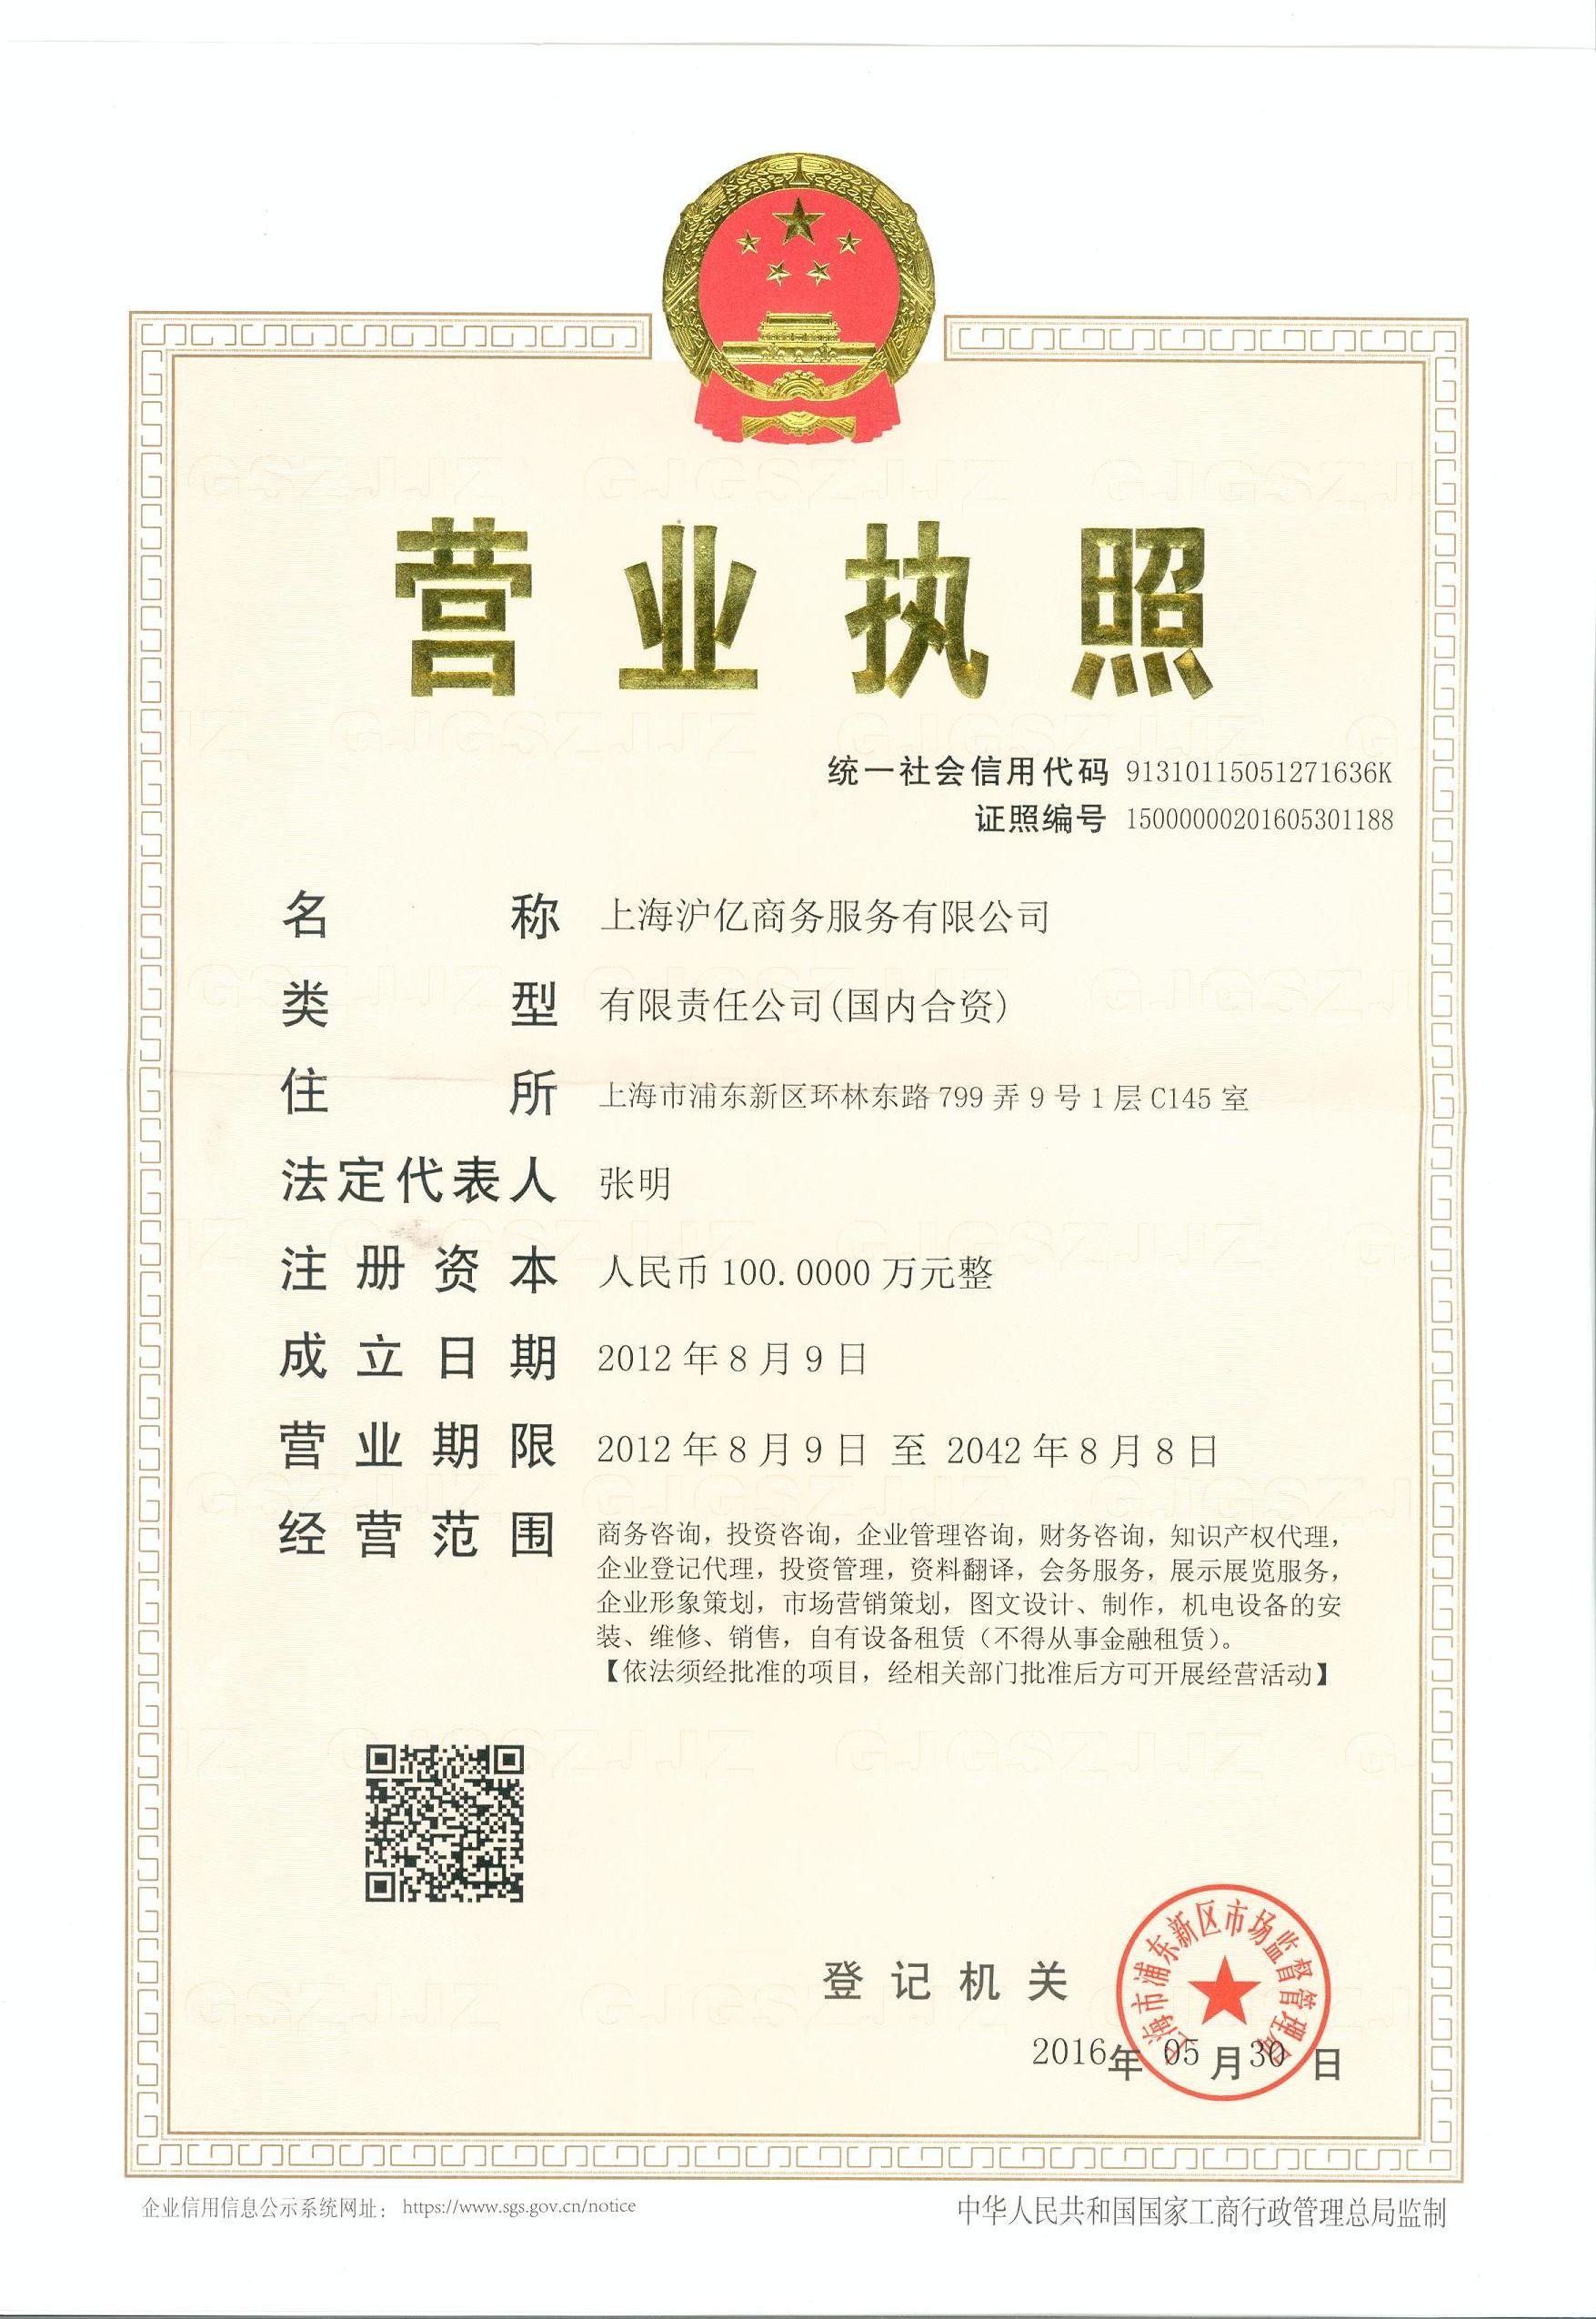 上海律字母互联网金融信息服务有限公司